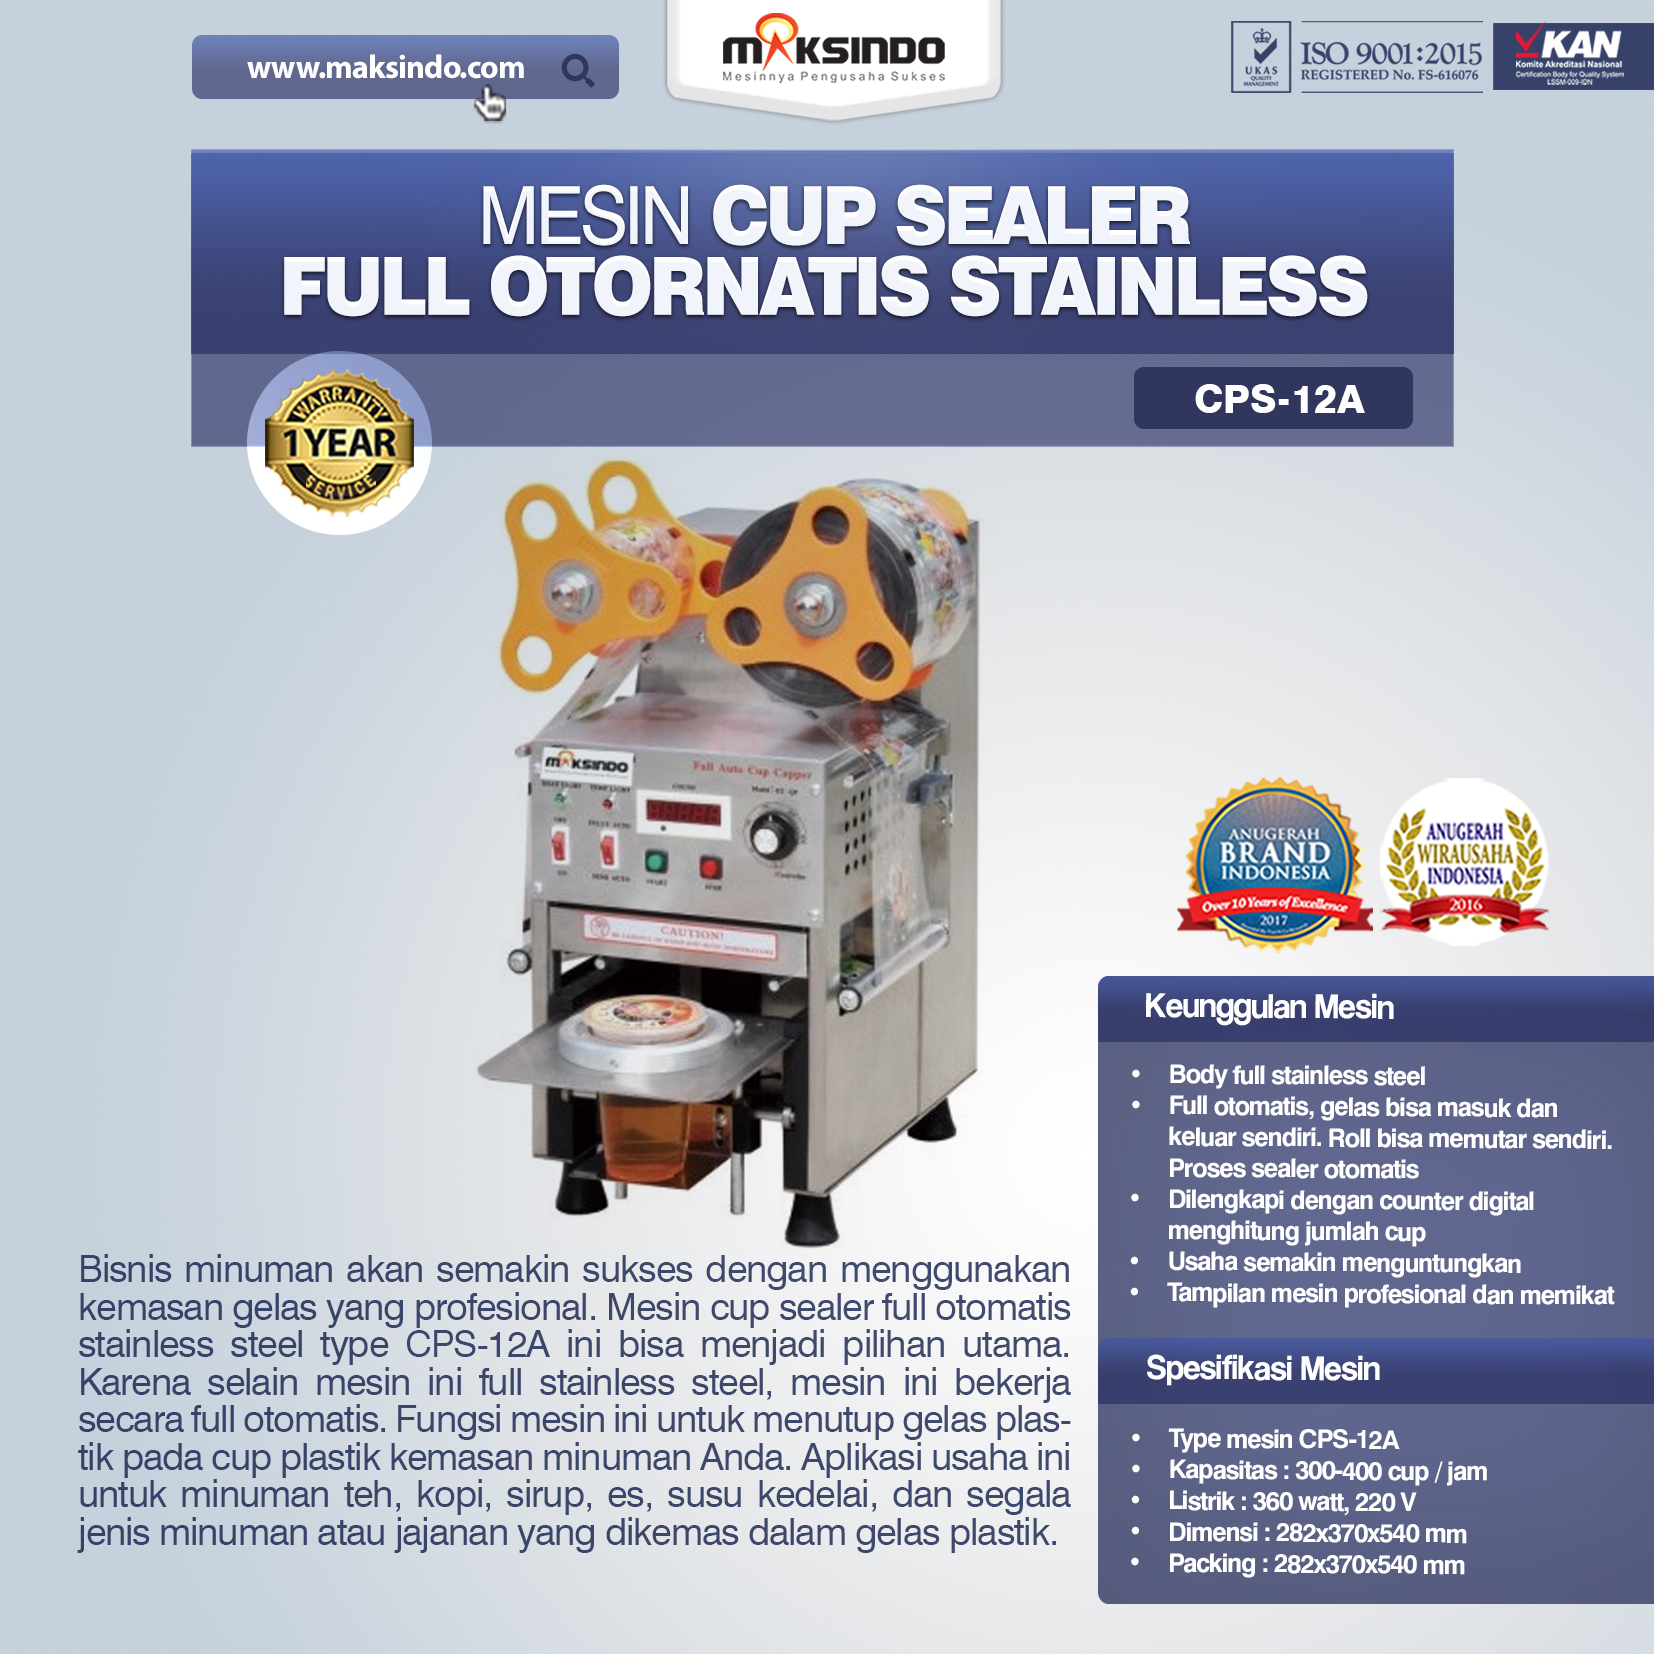 Jual Mesin Cup Sealer Full Otomatis Stainless (CPS-12A) di Pekanbaru